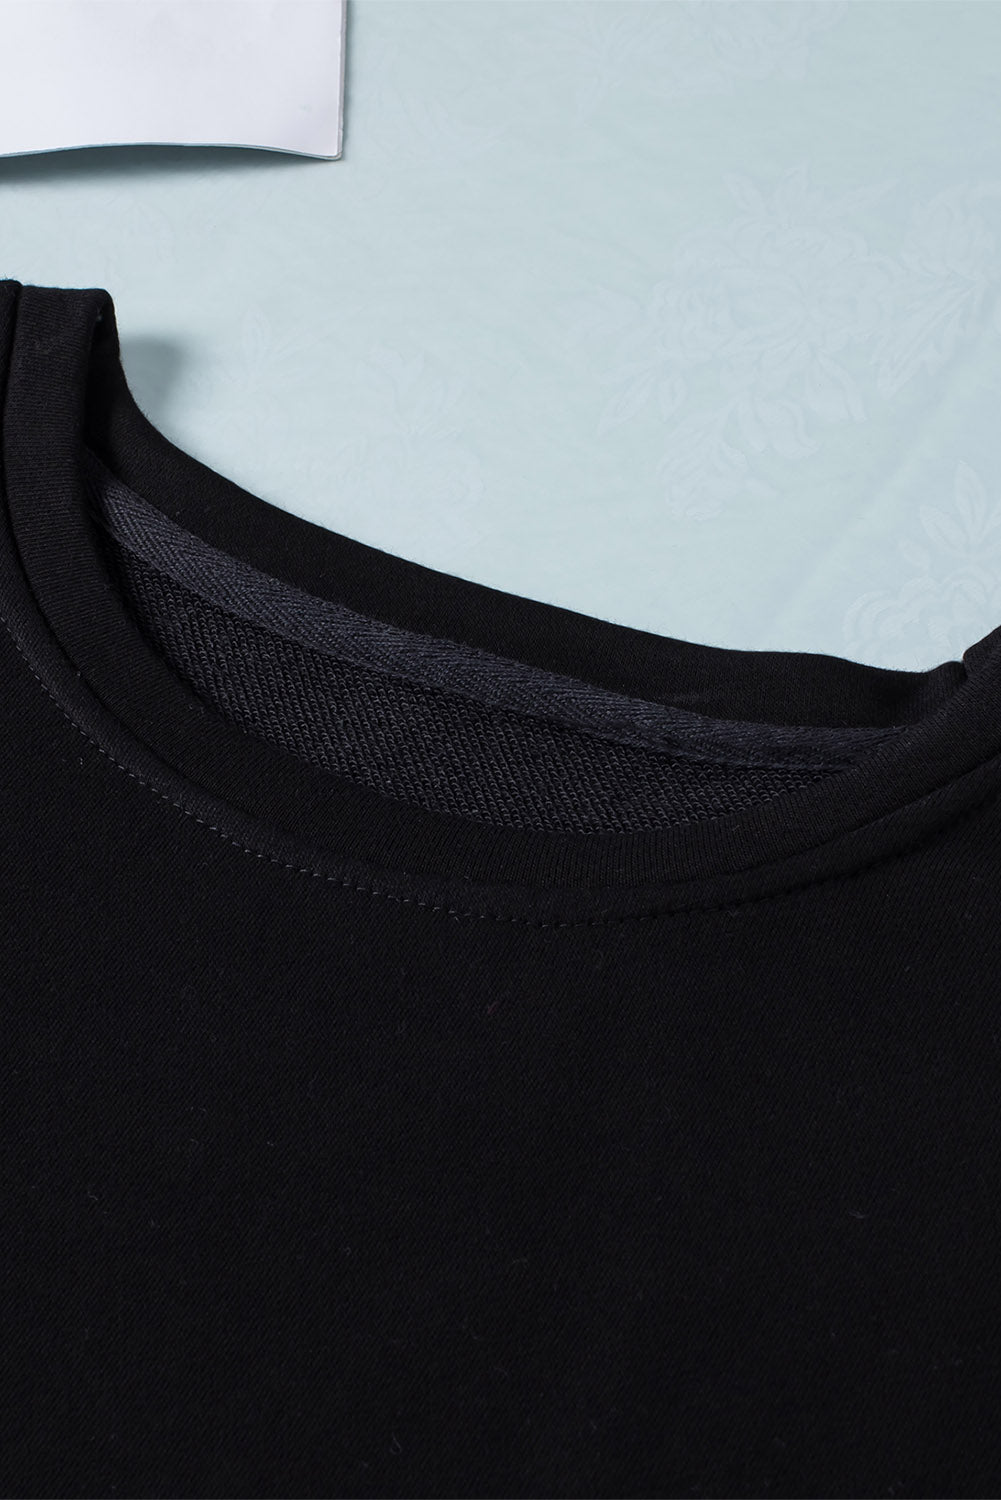 Crna majica veće veličine s okruglim izrezom u boji